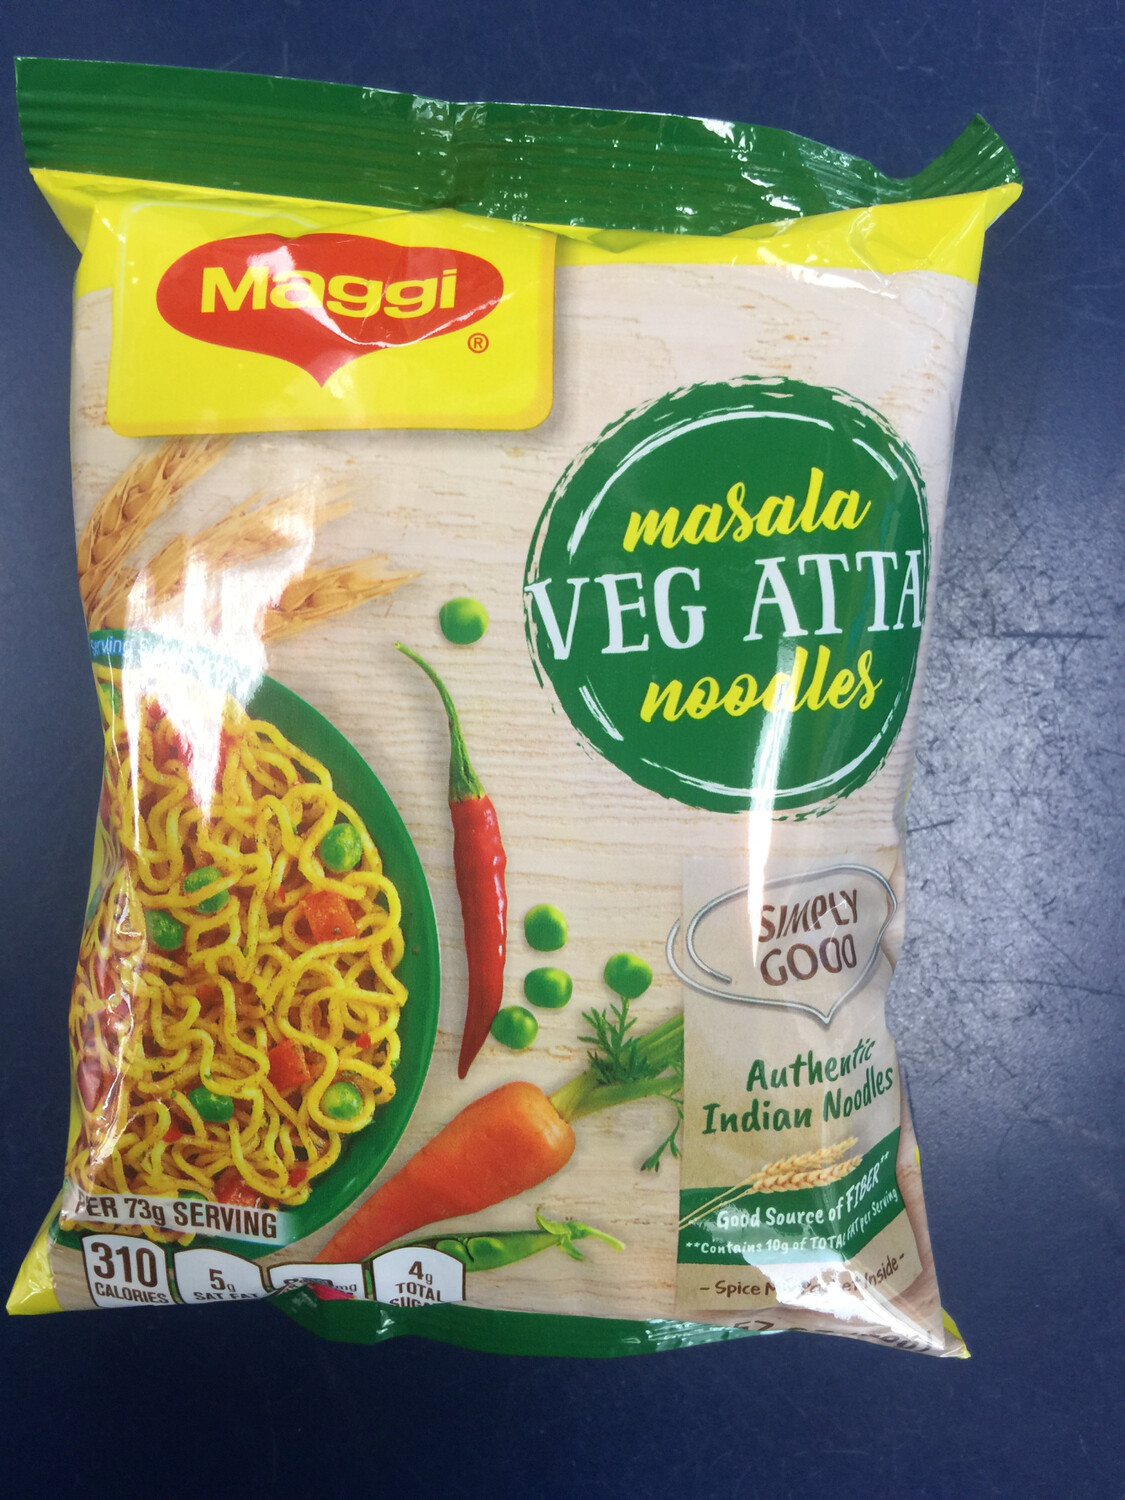 Maggi Masala Veg Atta Noodles 73g